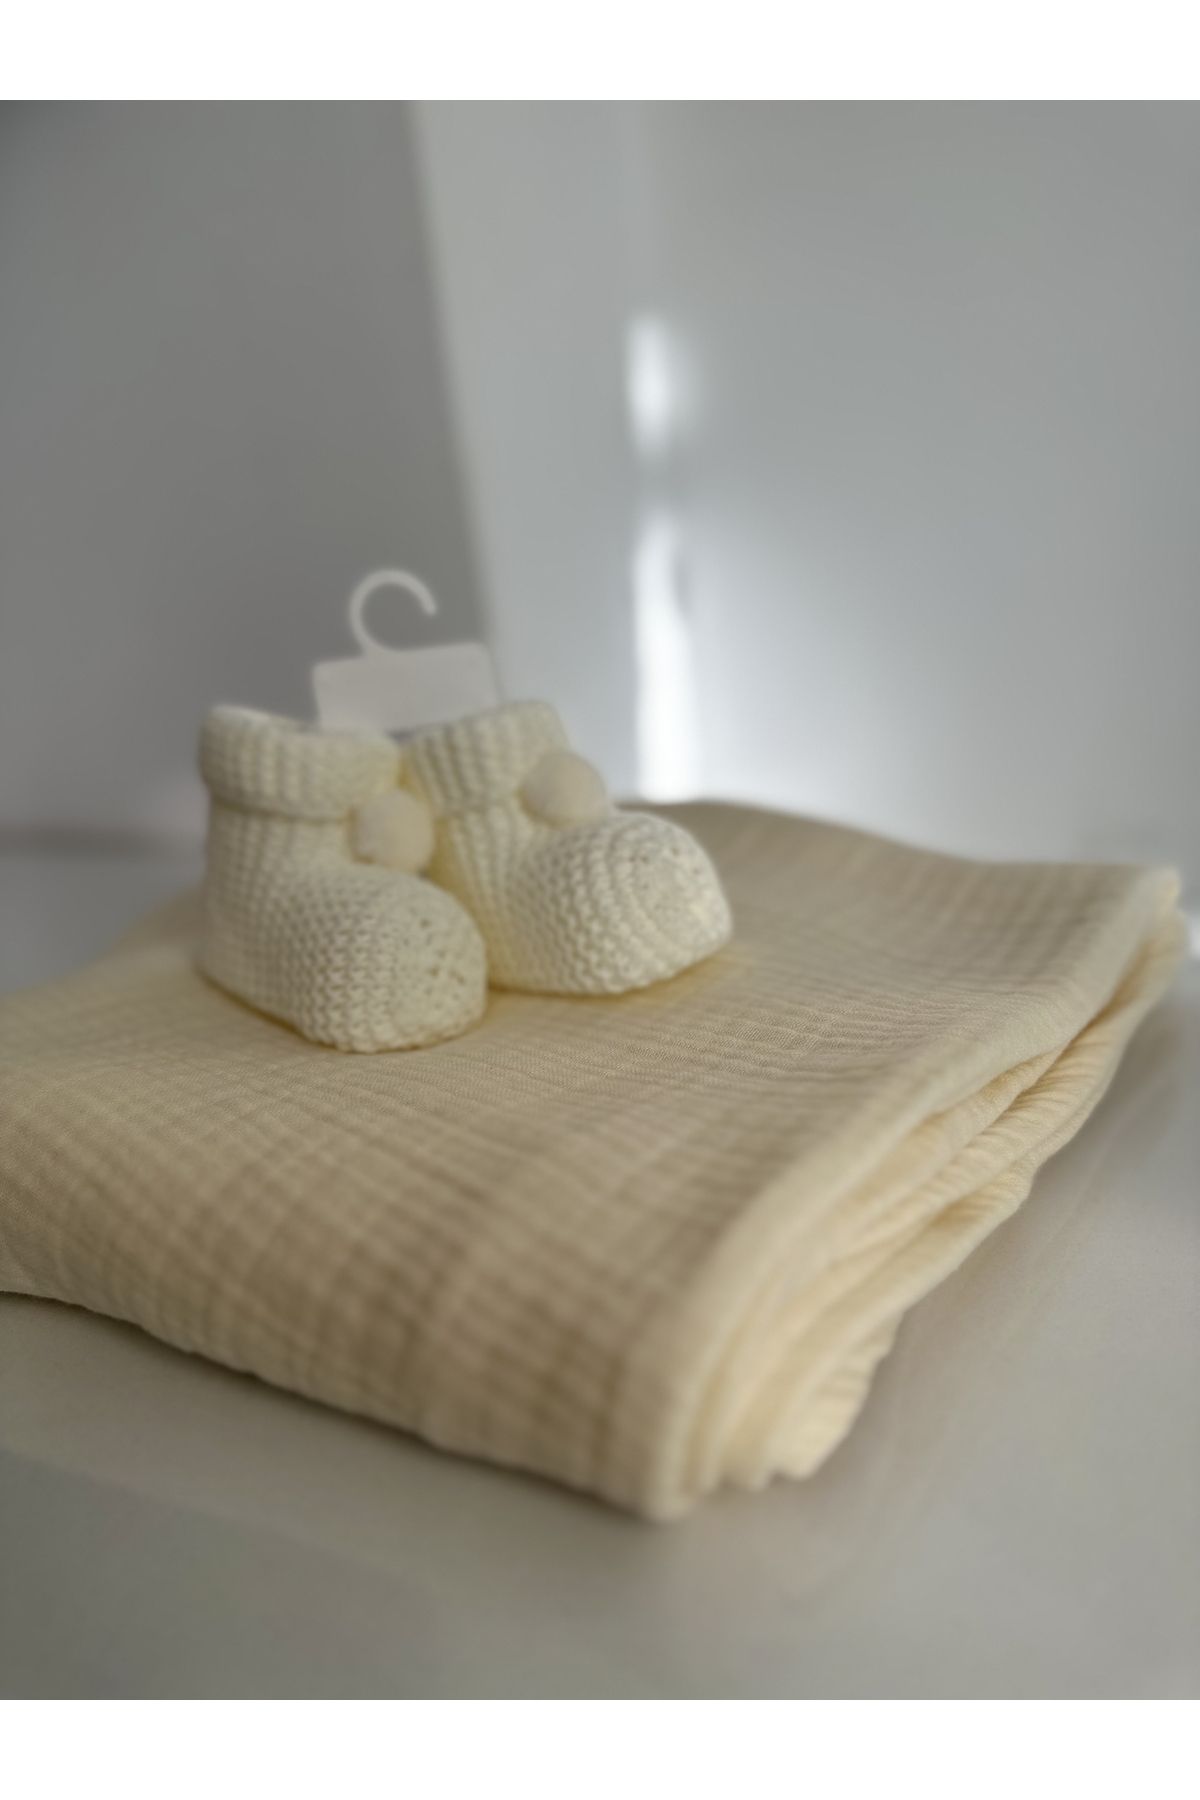 Necix's Aldiya Baby Bebek patik çorap battaniye set hediye Takım sürpriz hediyeli